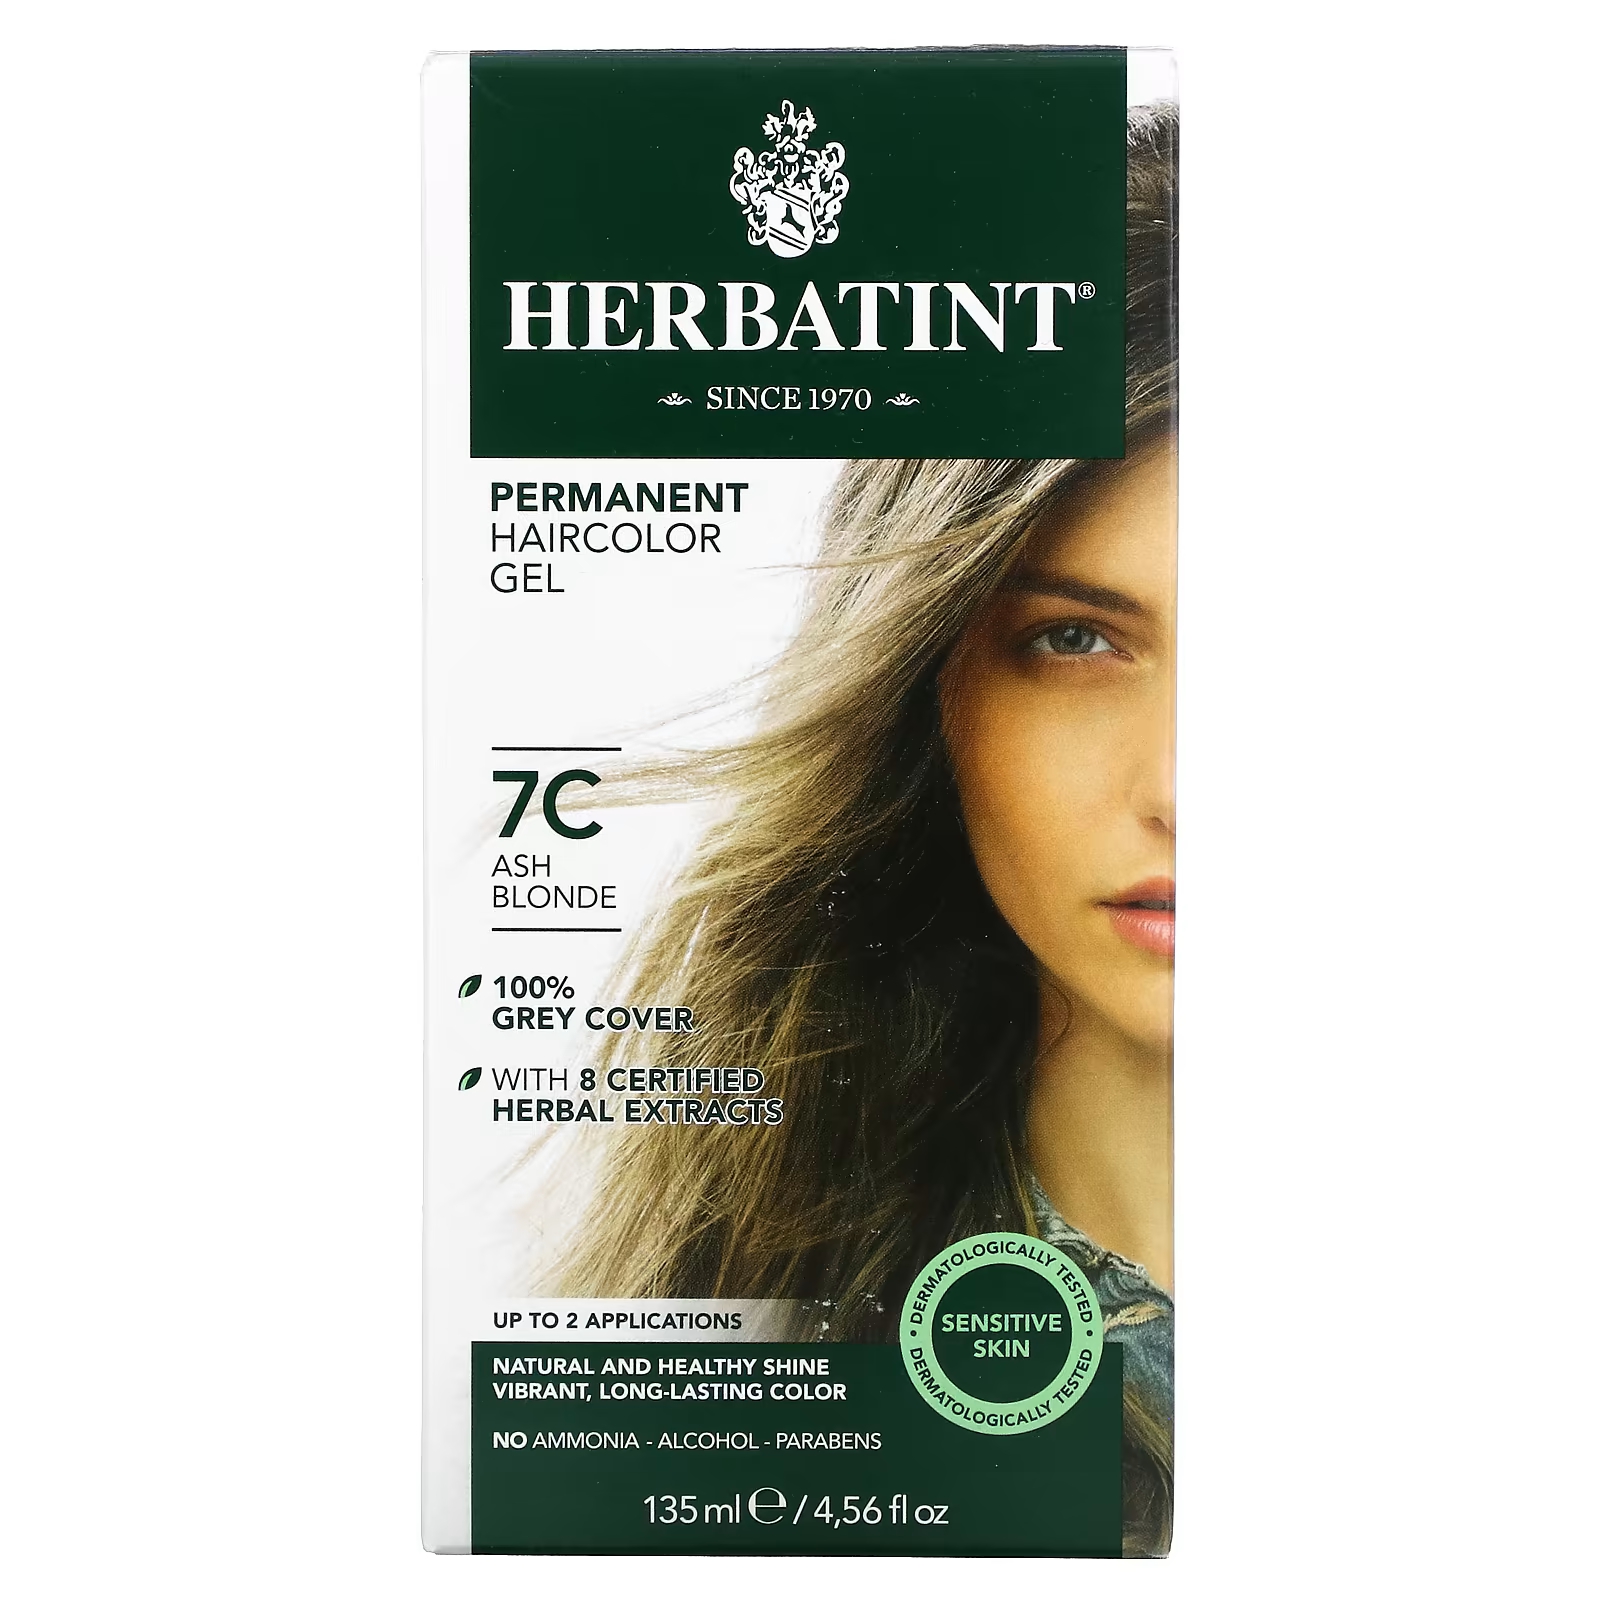 Перманентная гель-краска для волос Herbatint 7C пепельный блондин, 135 мл herbatint 7c стойкая гель краска для волос темный пепельный блондин 135 мл 4 56 жидк унции